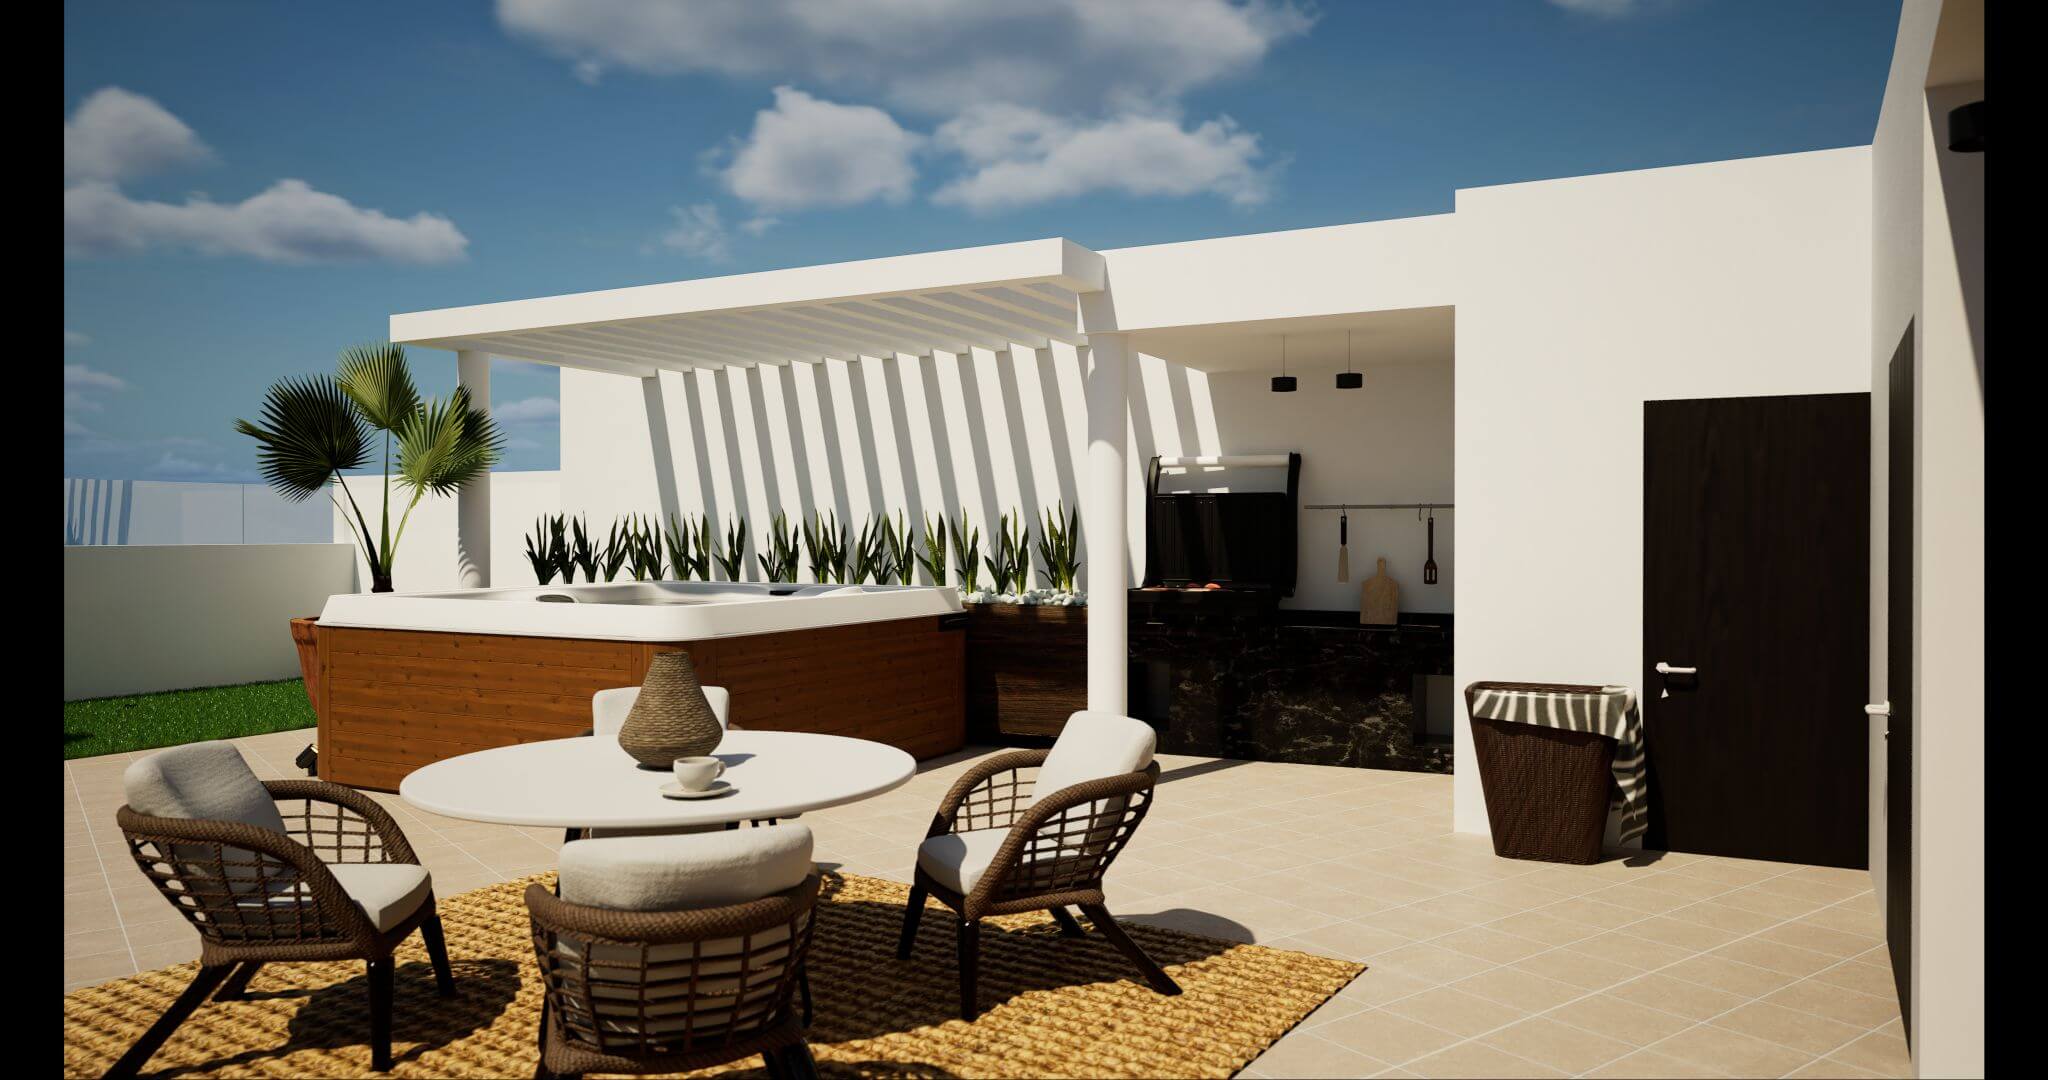 Condominio 2 recamaras + estudio, con club de playa, campo de golf, amenidades exclusivas, en venta, Corasol, Playa del Carmen, pre-construc